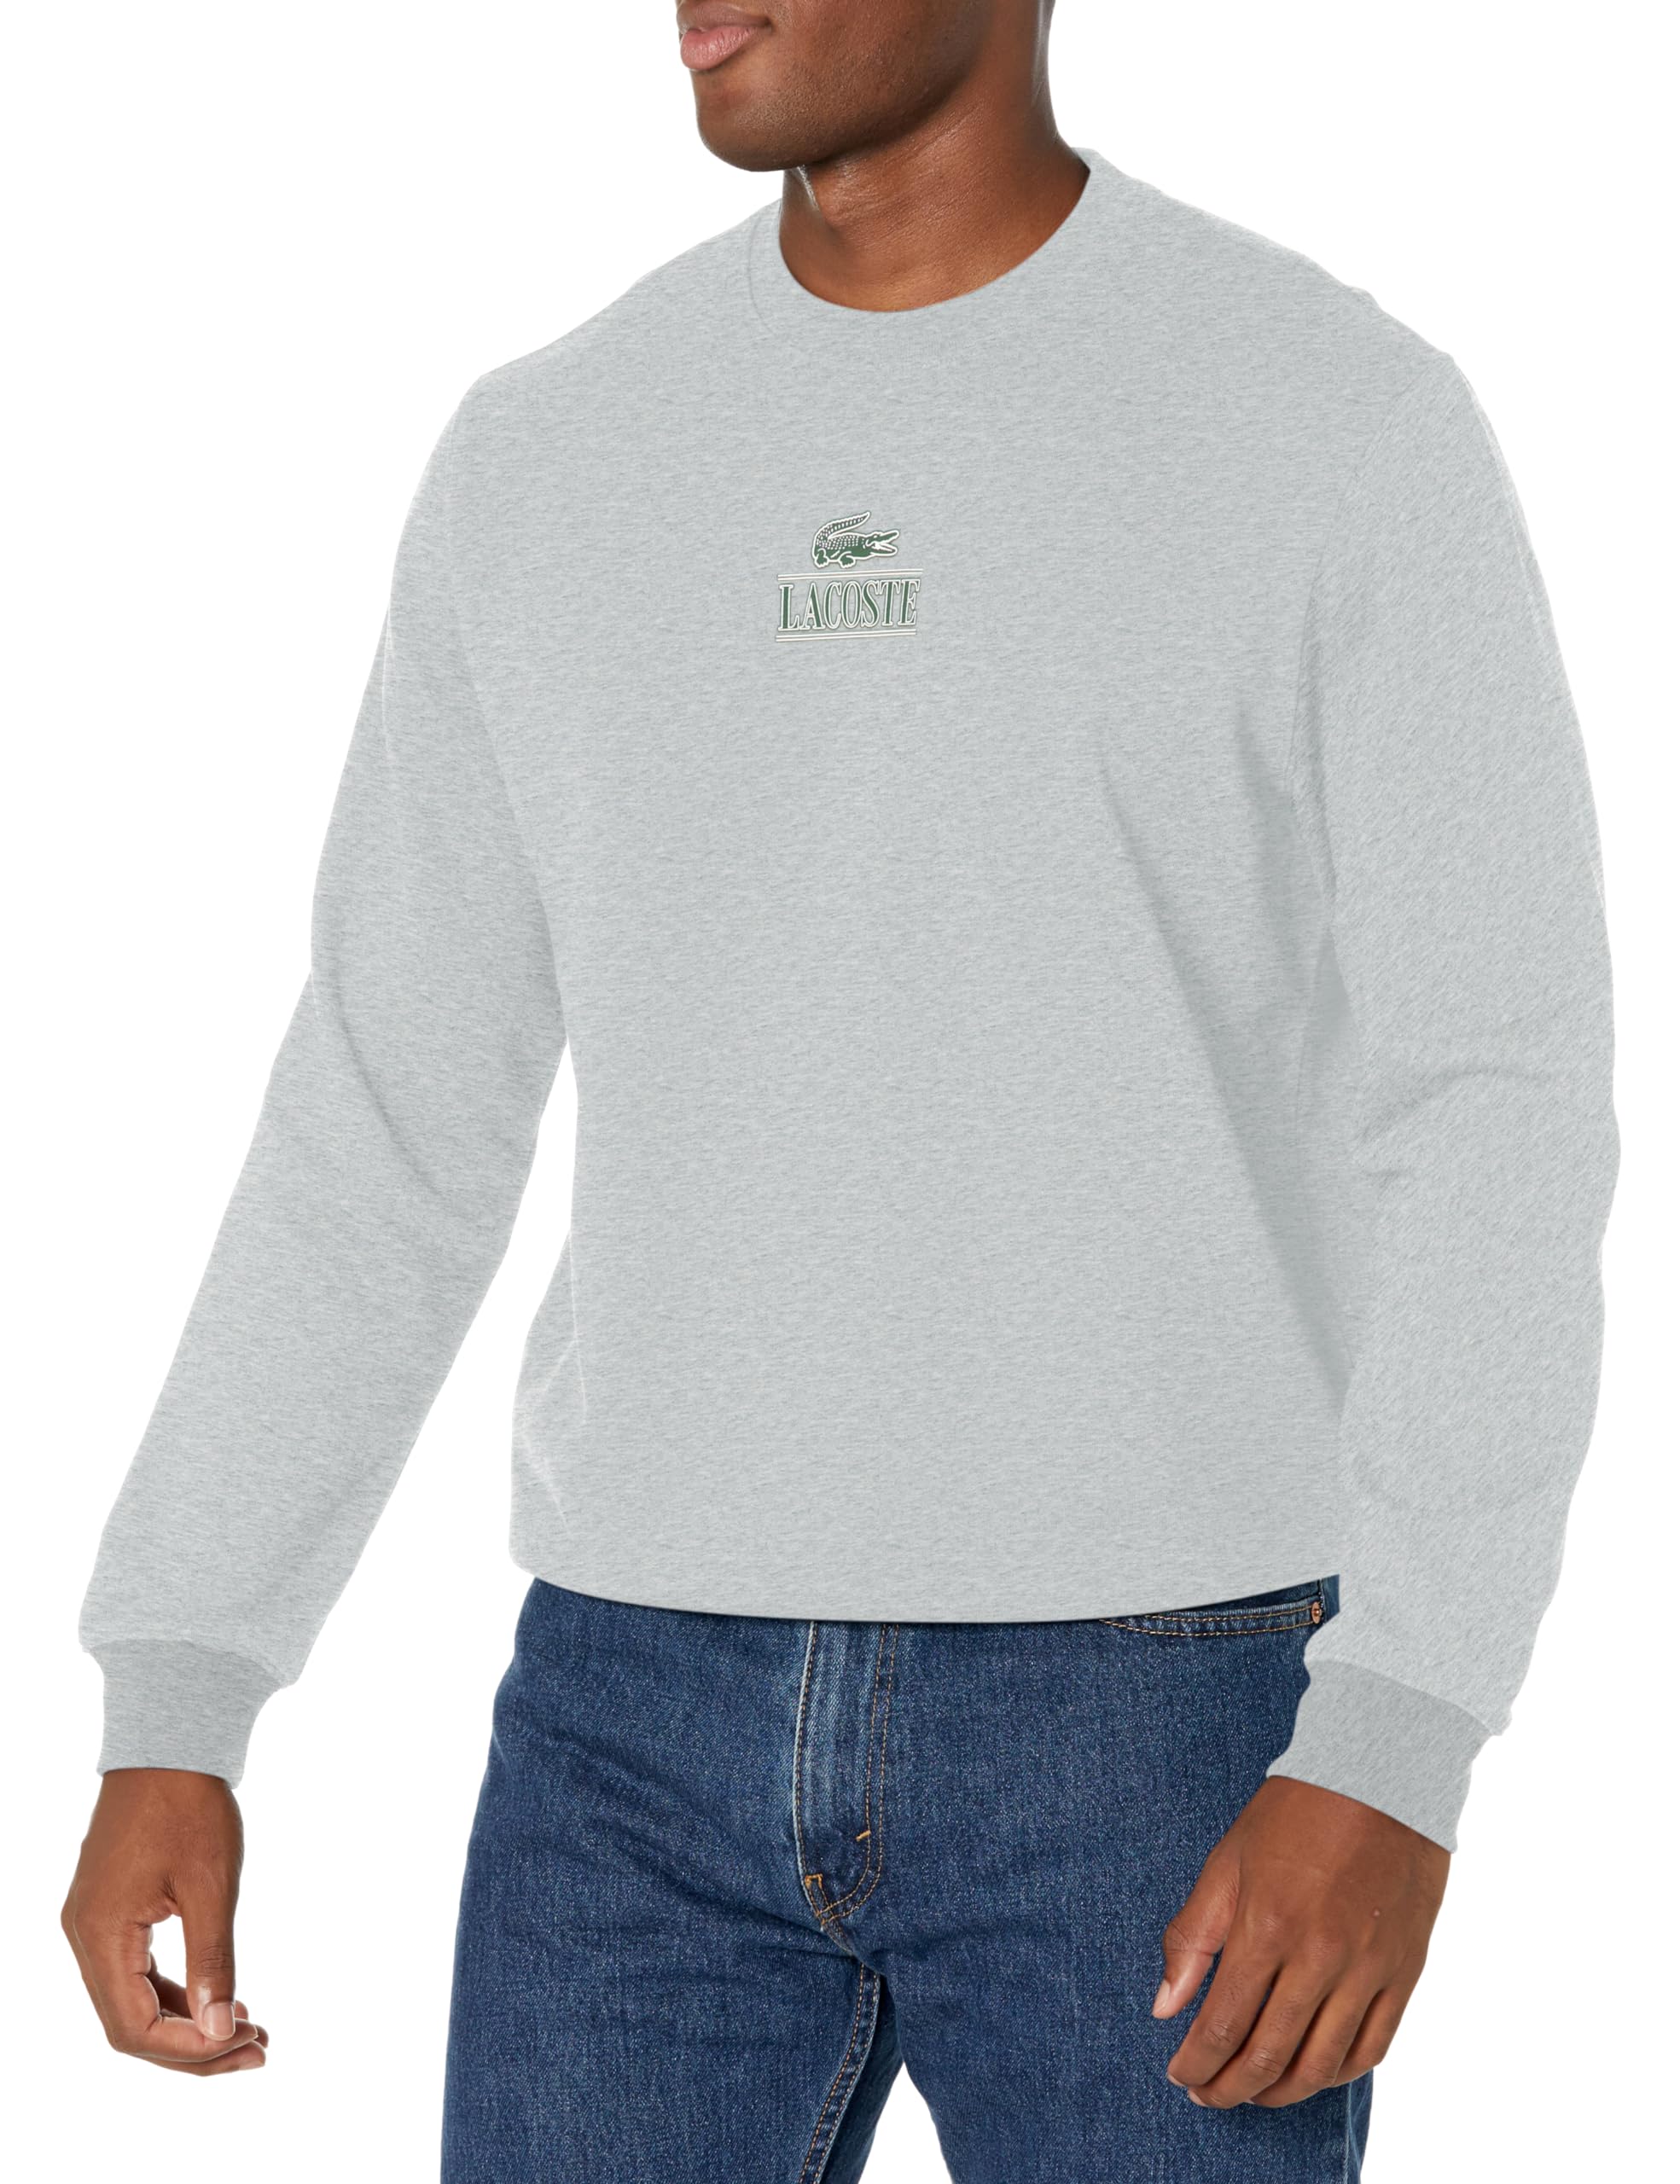 Lacoste Men's Minimal Croc Crew Neck Sweatshirt